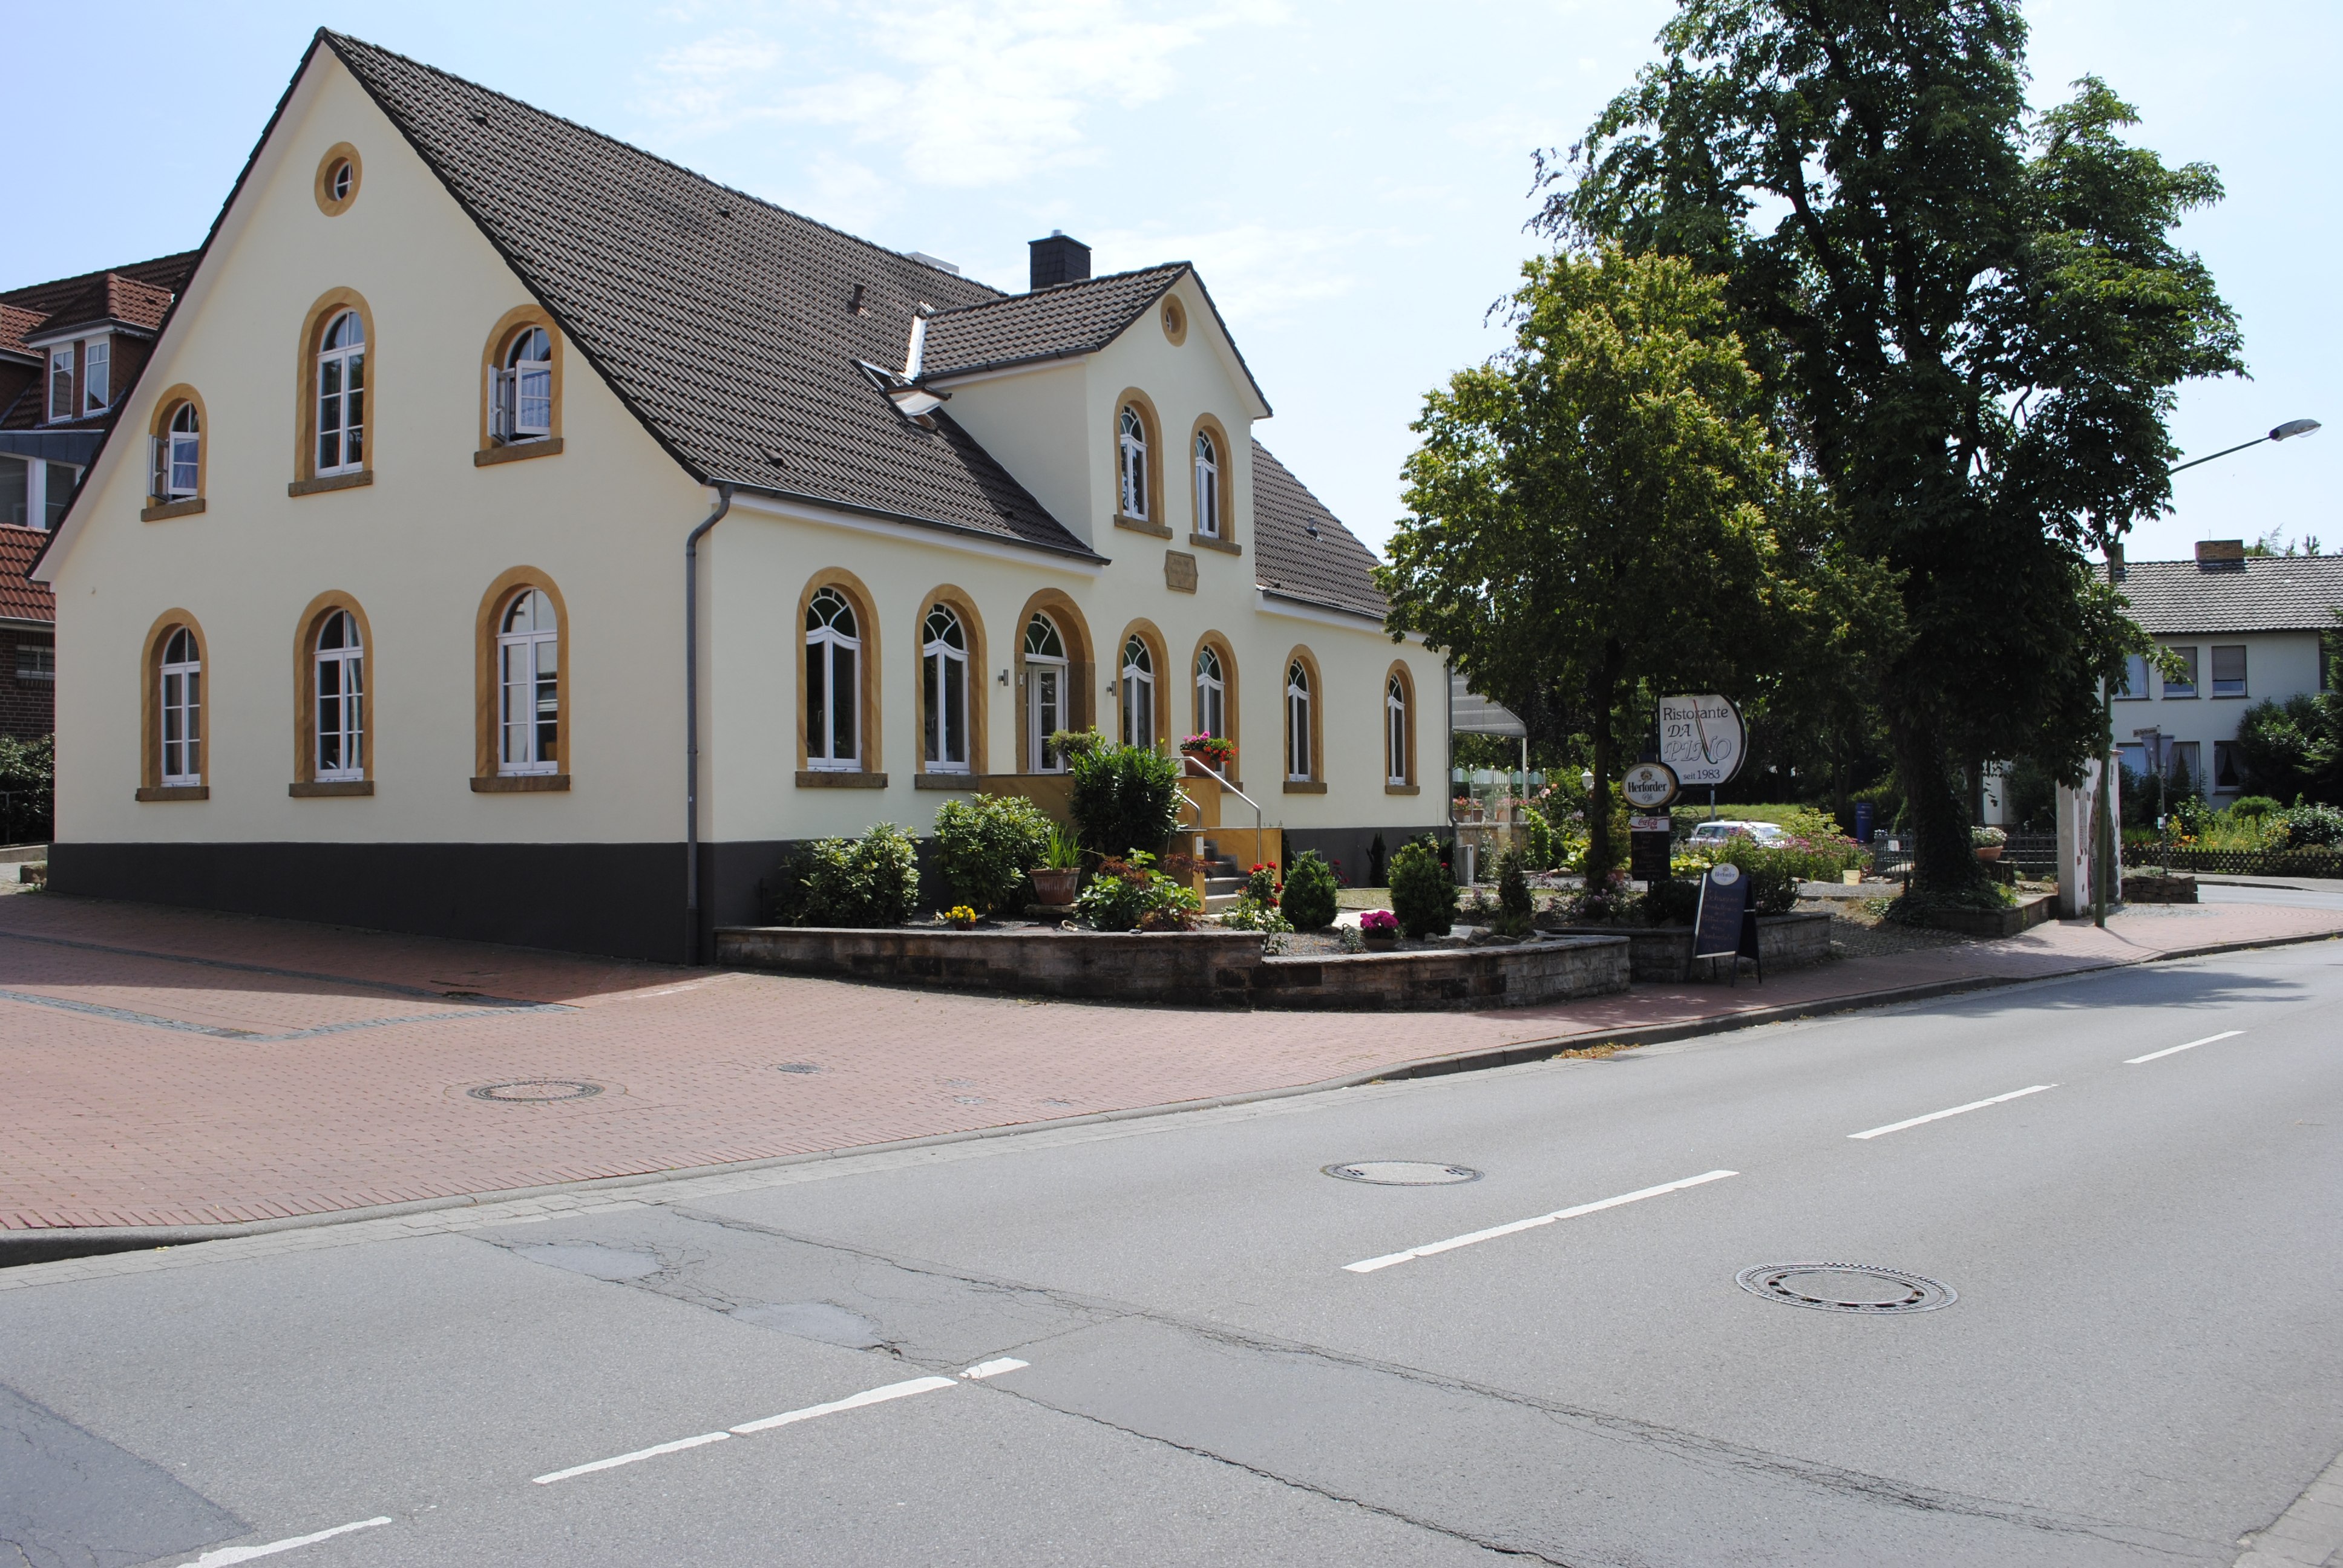 Unser Haus seit über 150 Jahren in Hagen unter Denkmalschutz.